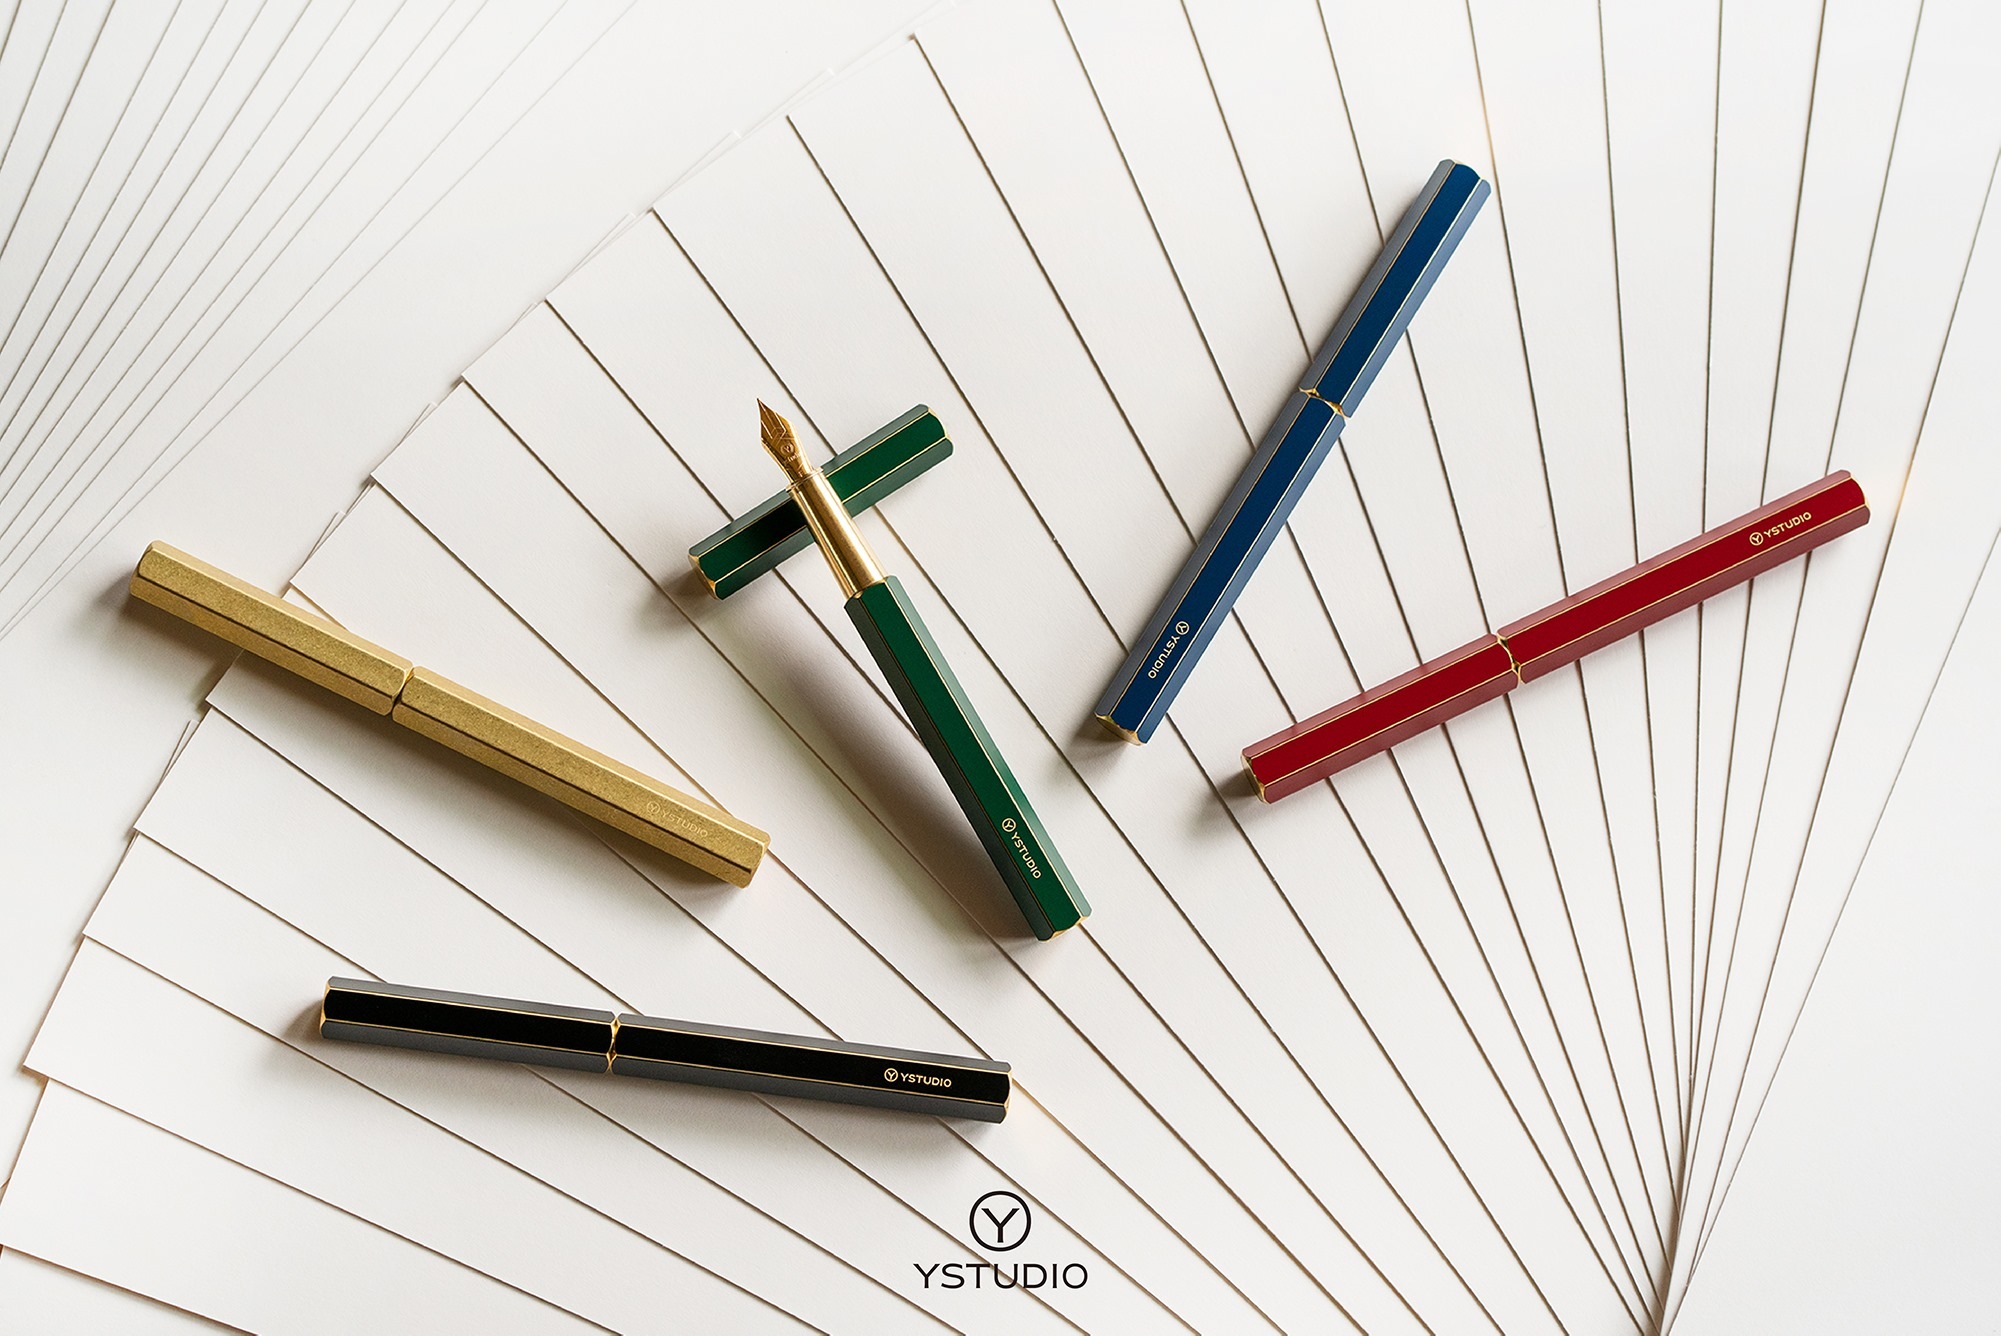 物外YSTUDIO在鋼筆設計的過程中，把流利的筆觸及永續體驗，作為產品品質的最高考量